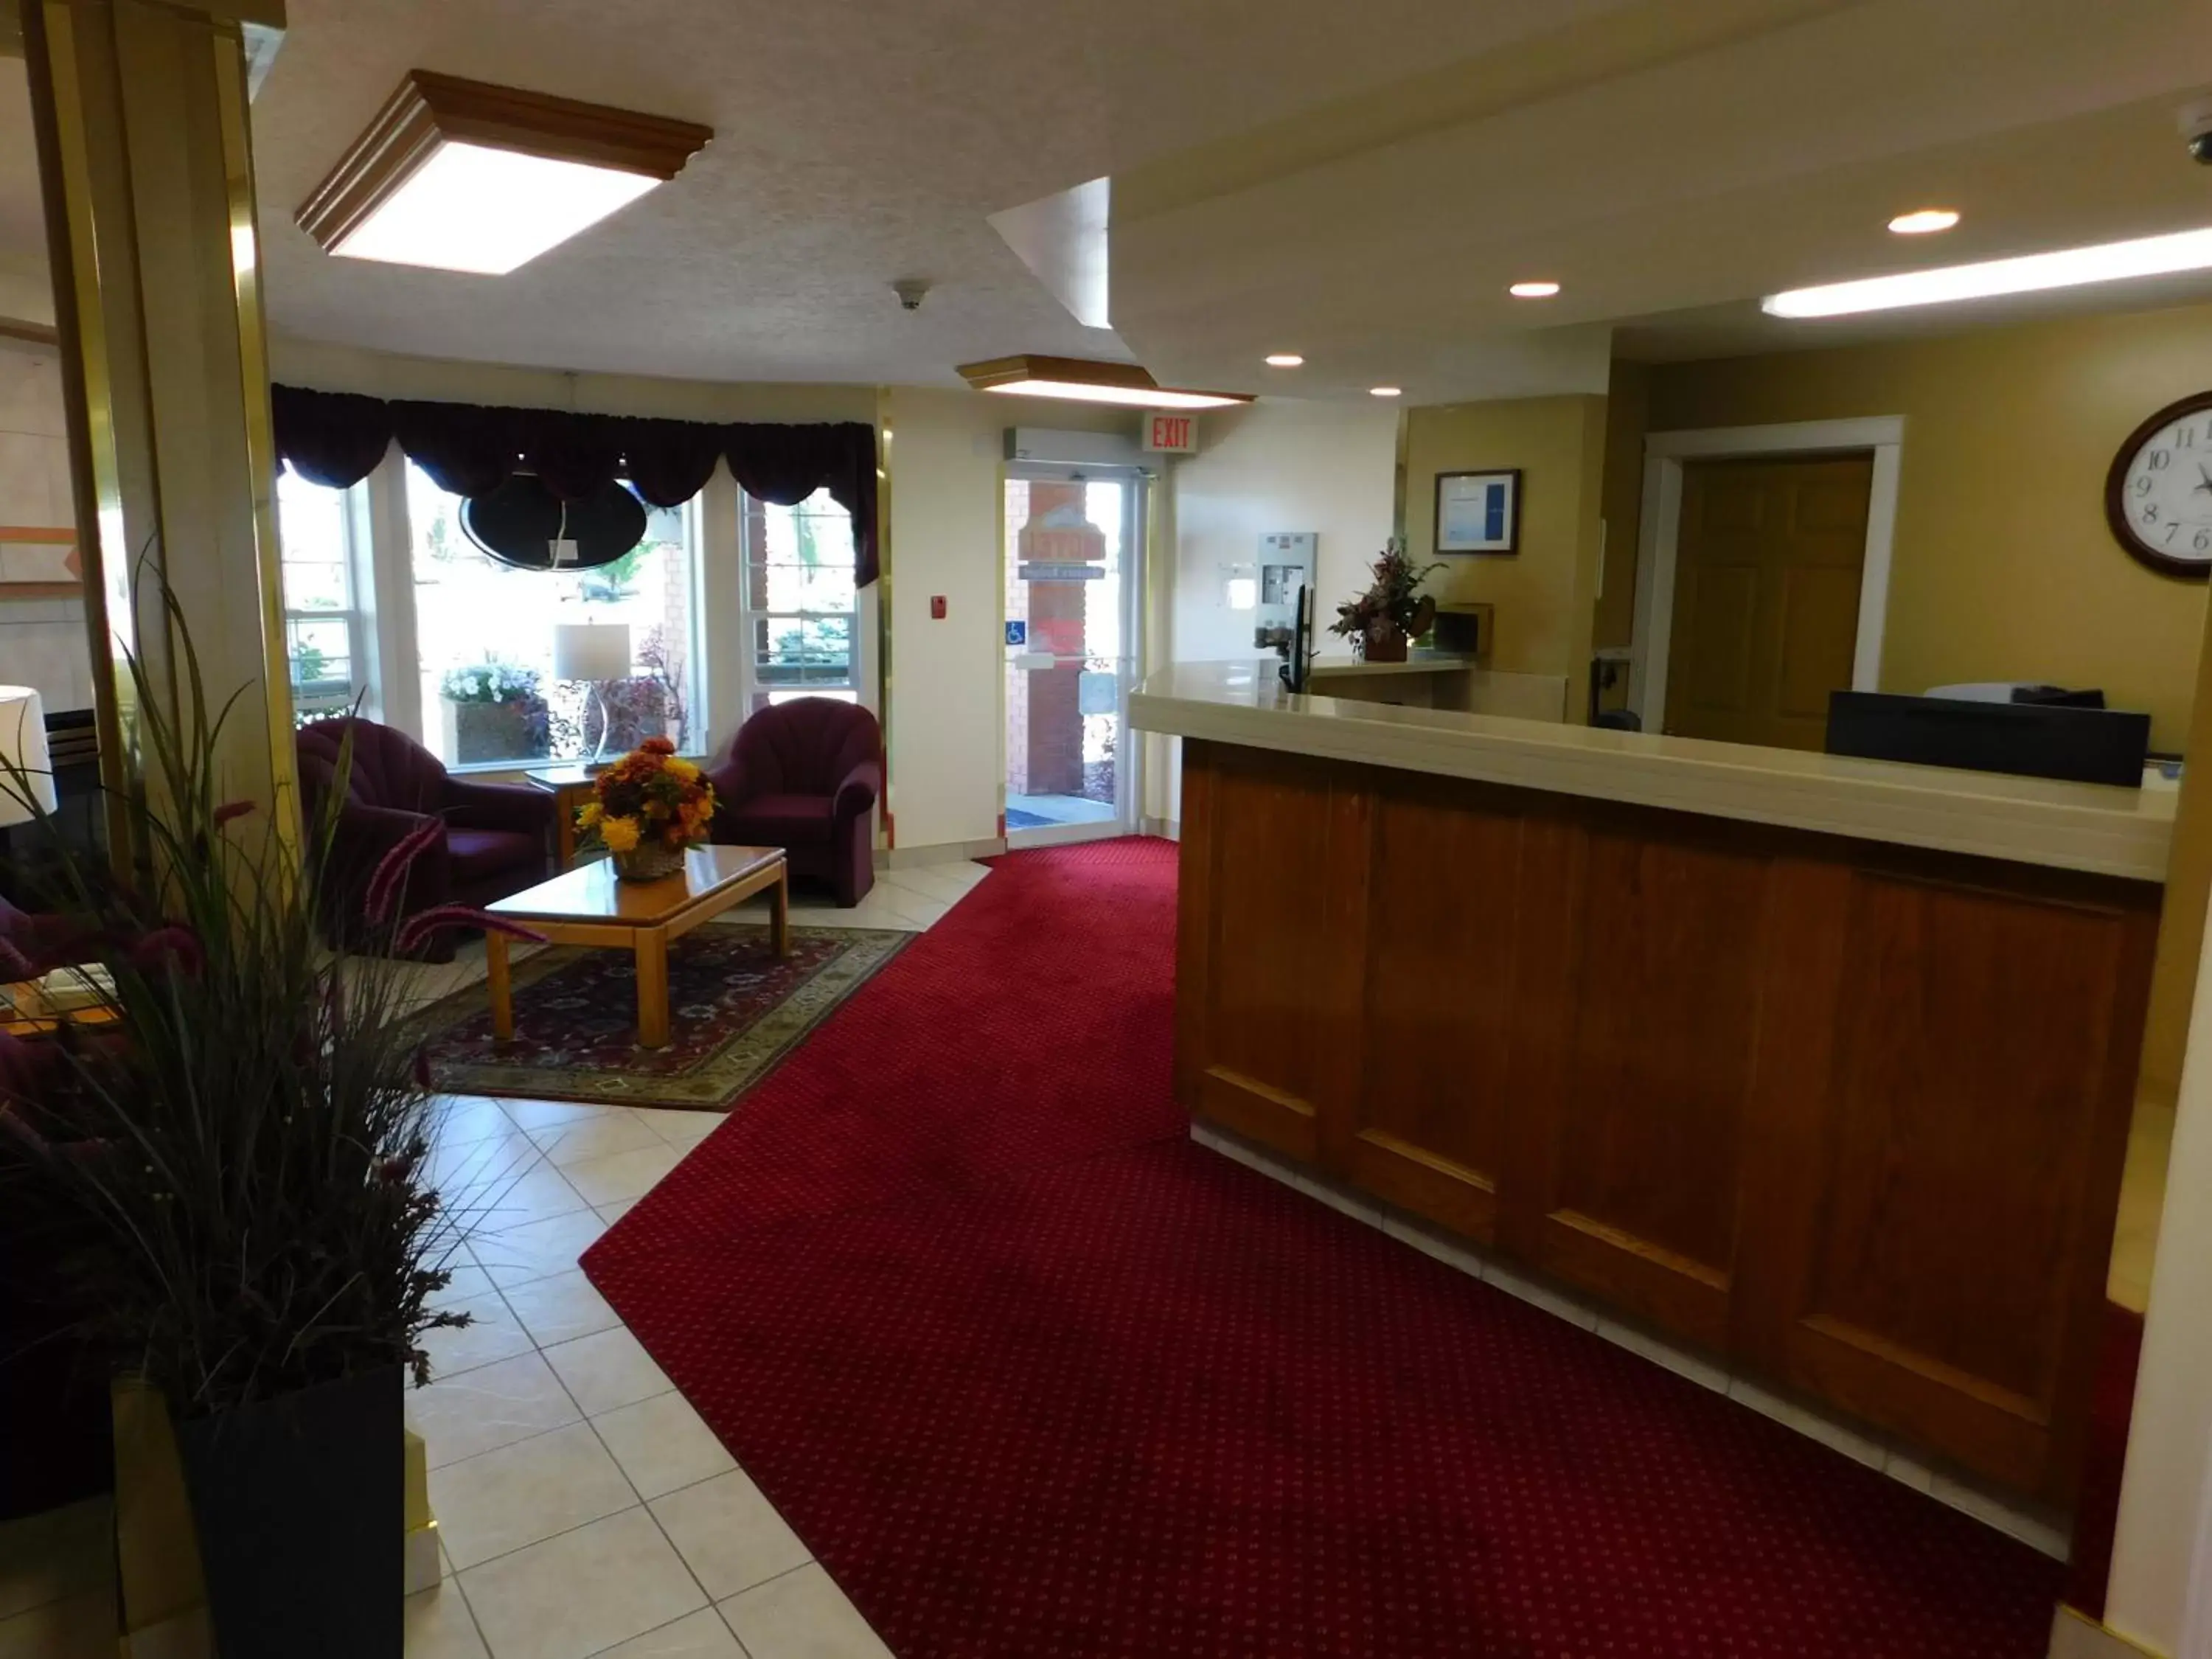 Lobby or reception, Lobby/Reception in Western Budget Motel #1 Leduc/Nisku